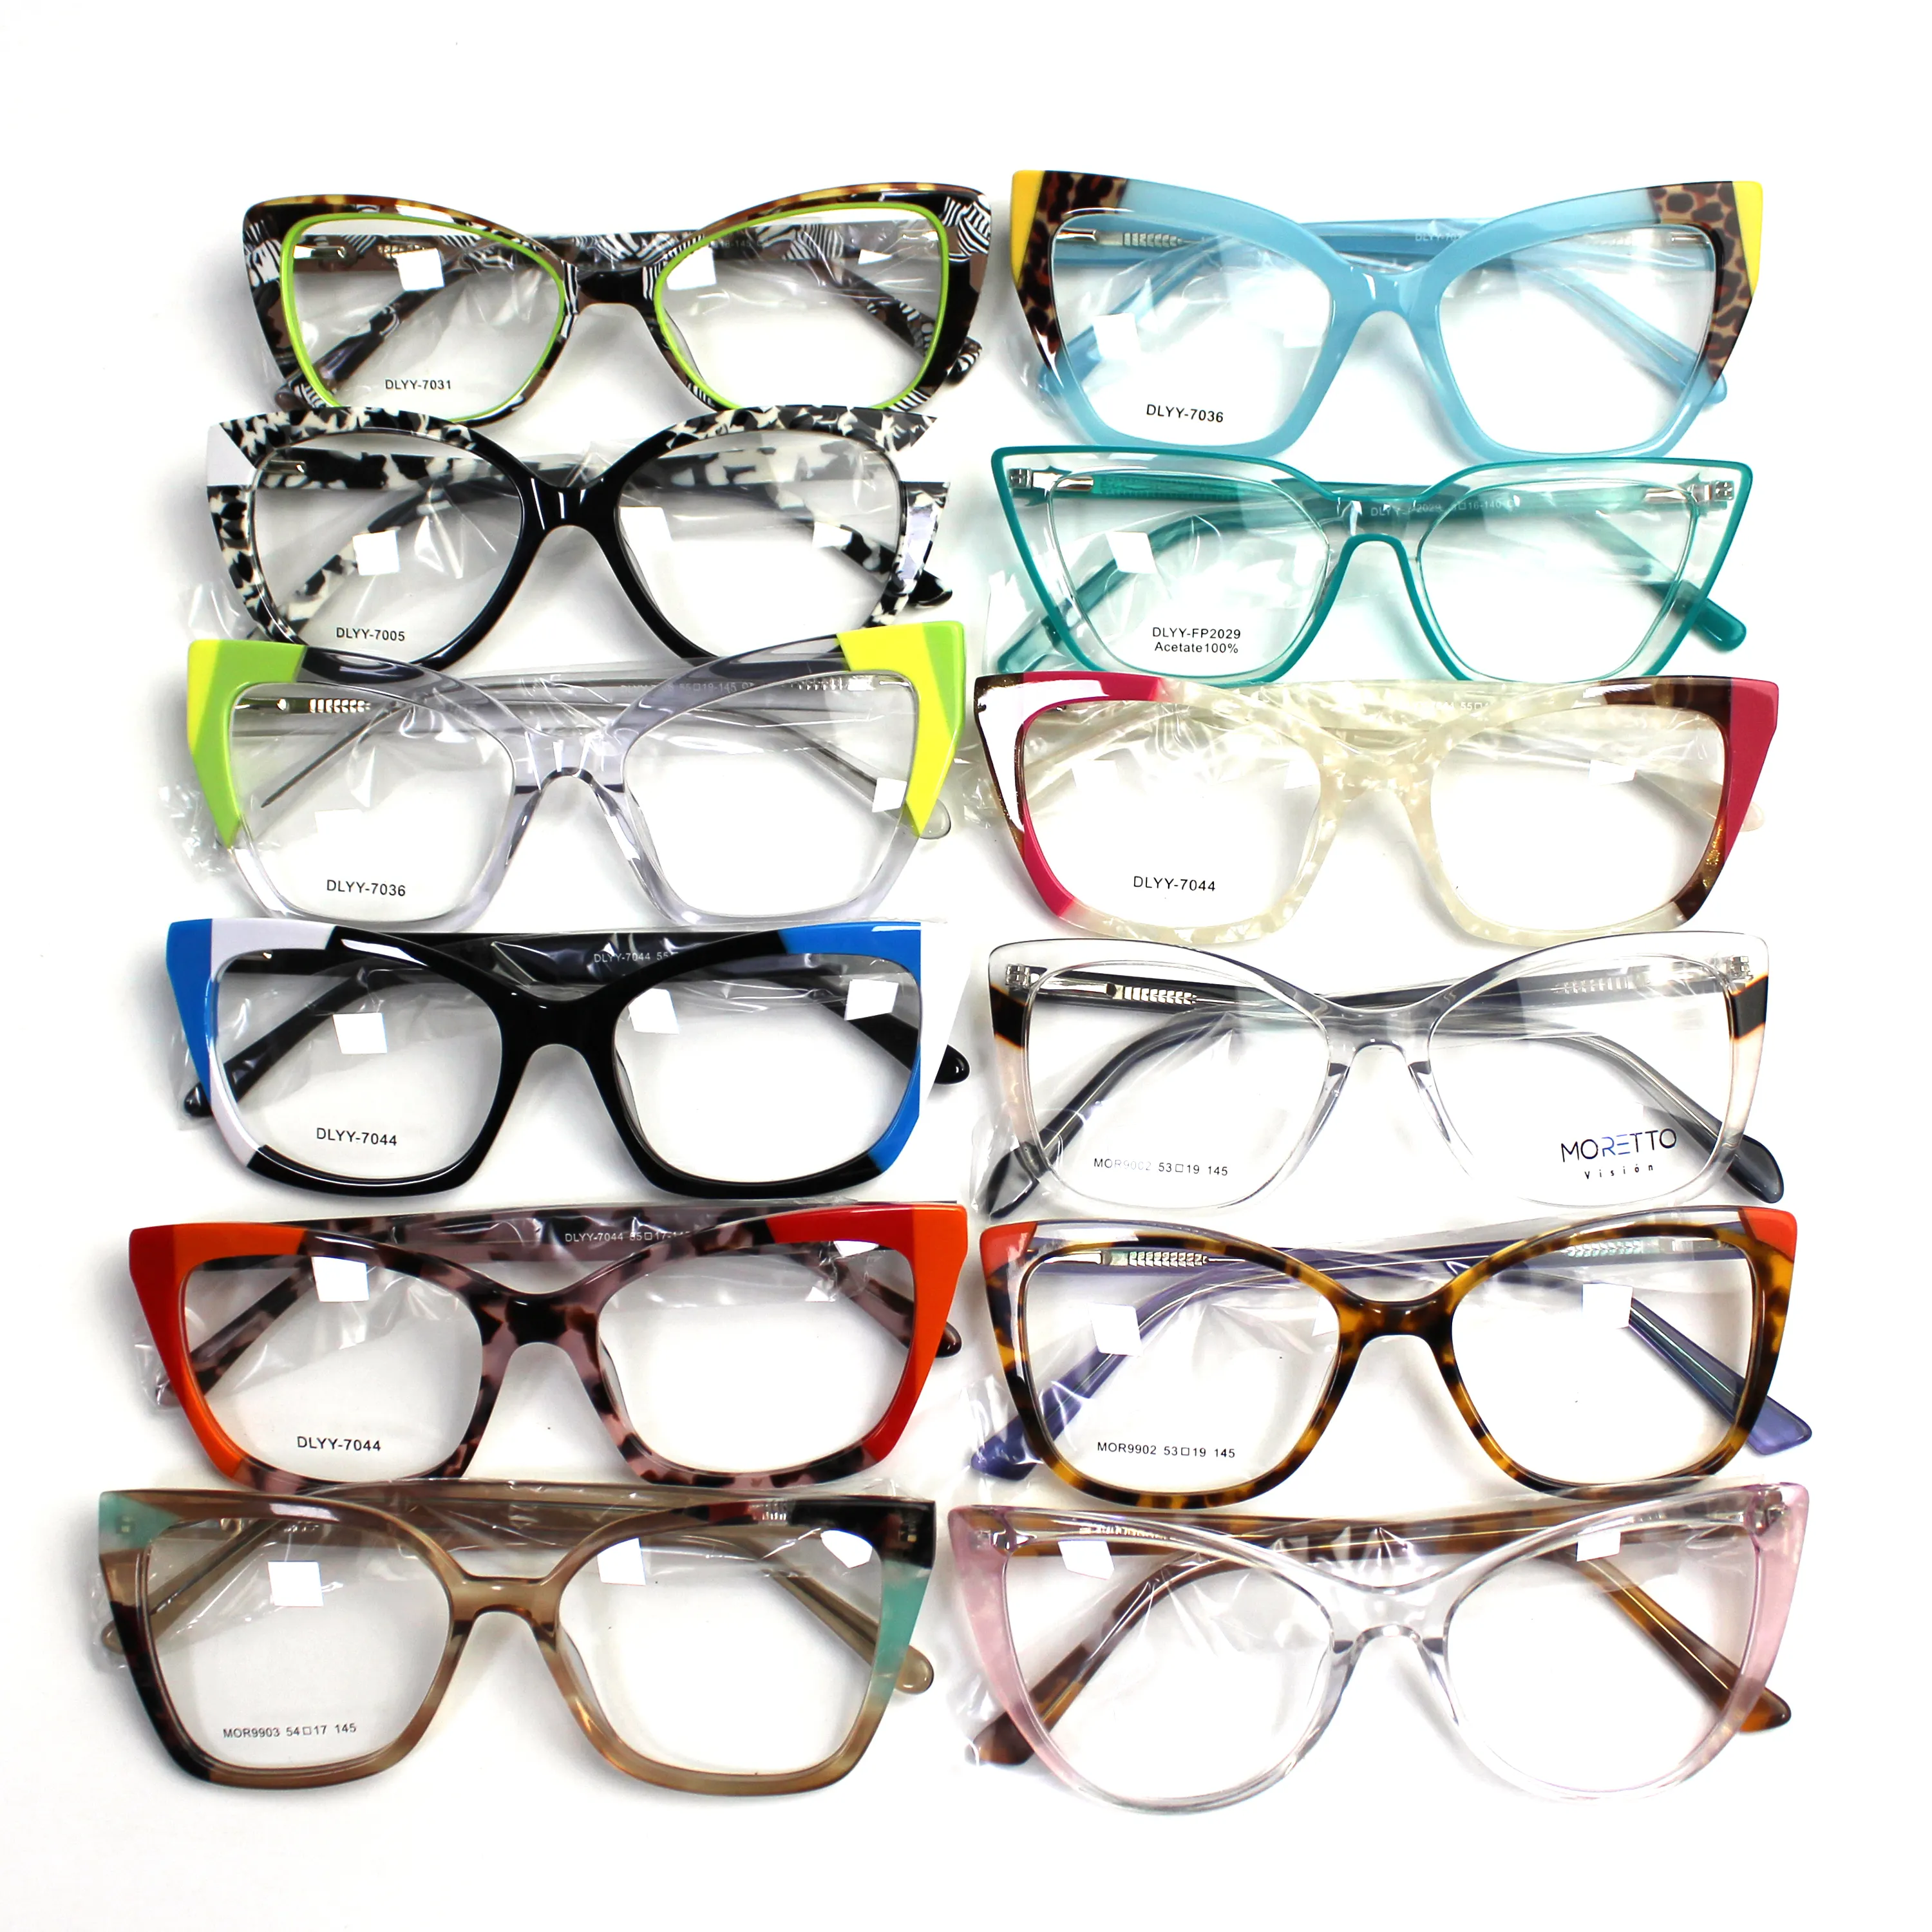 Gafas mixtas listas surtidas, gafas baratas, montura de acetato laminado, monturas para gafas ópticas